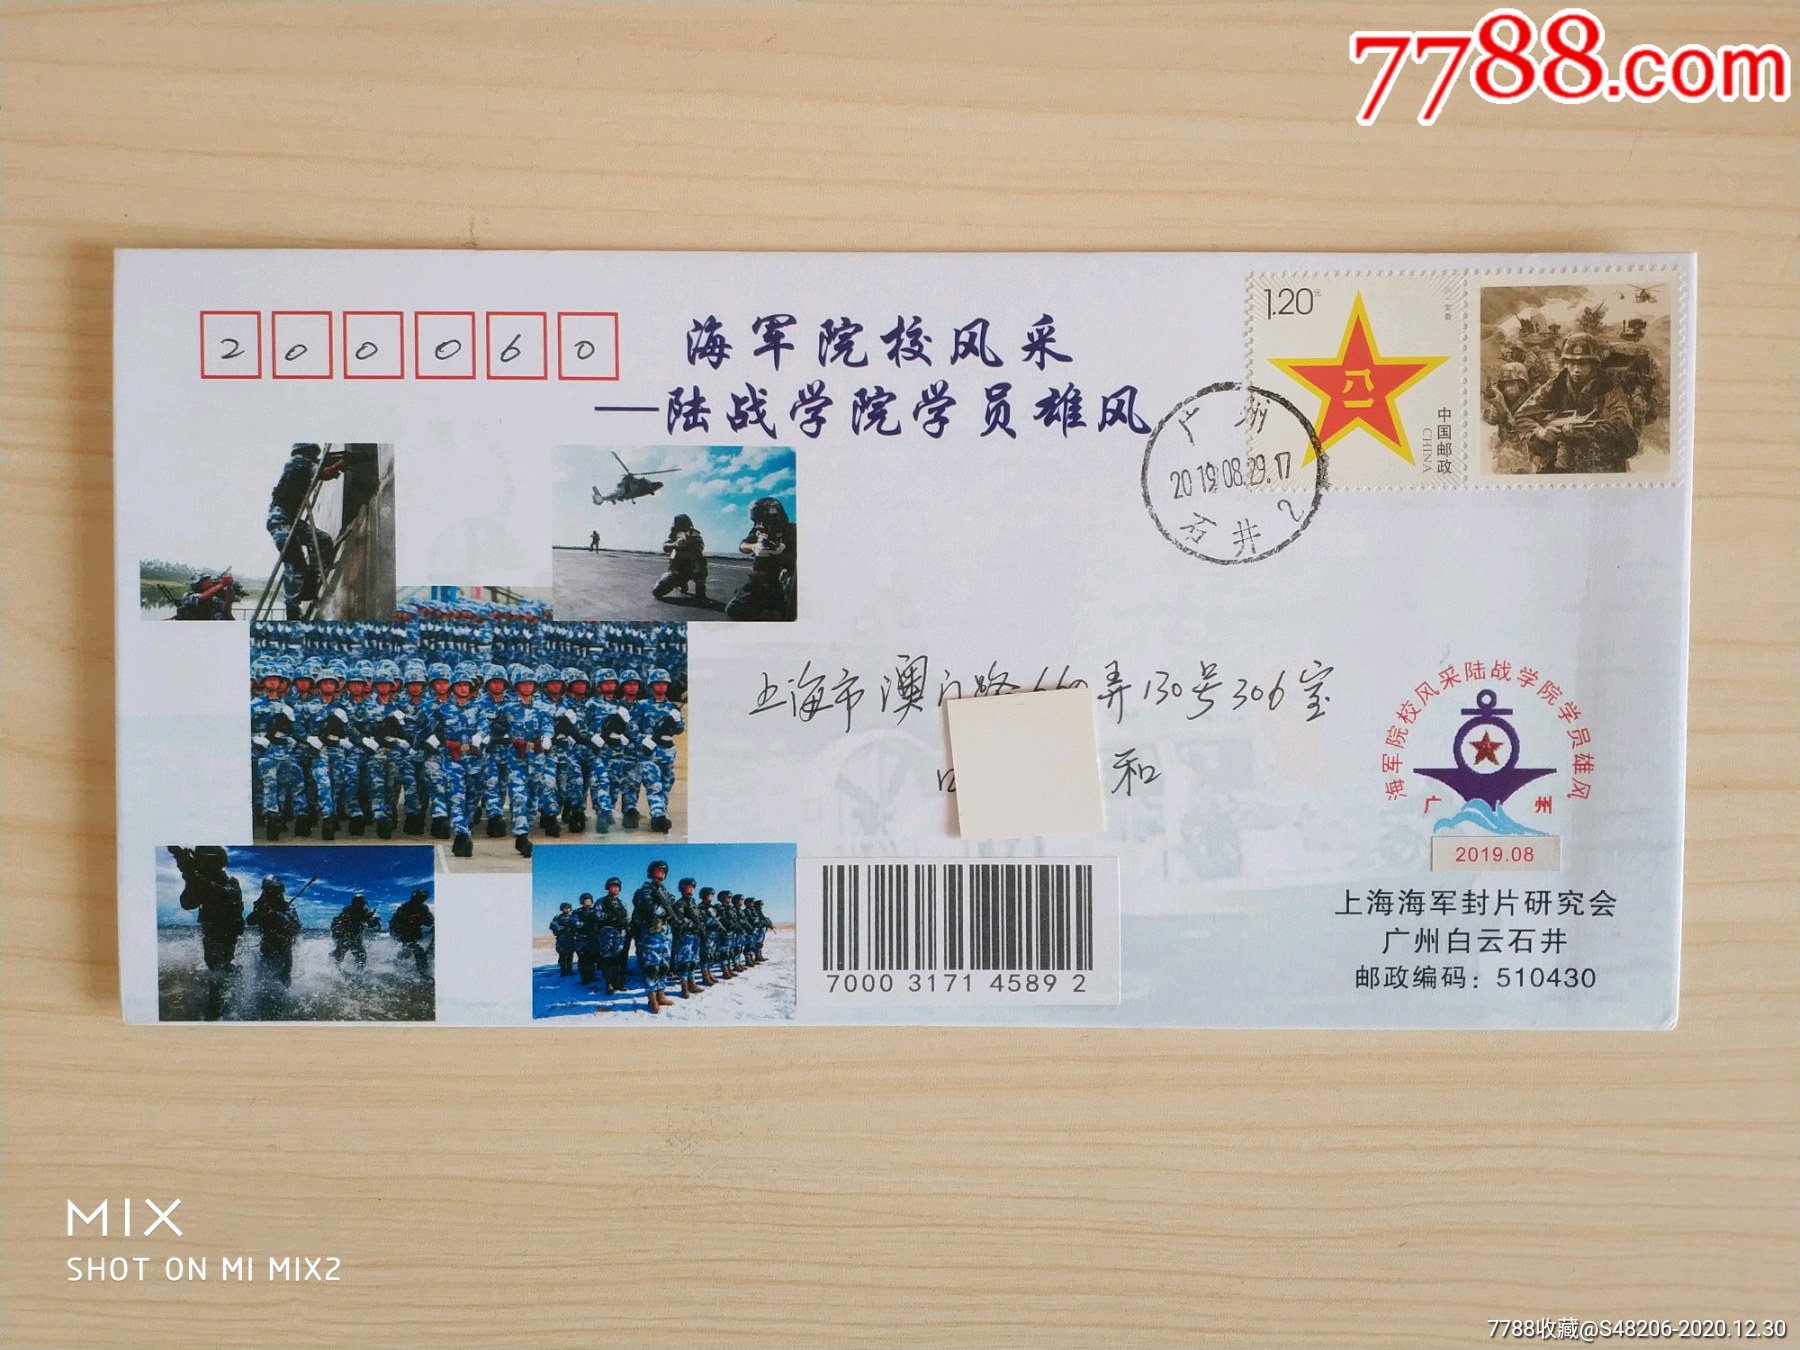 中国海军院校风采纪念封:海军陆战学院学员雄风纪念实